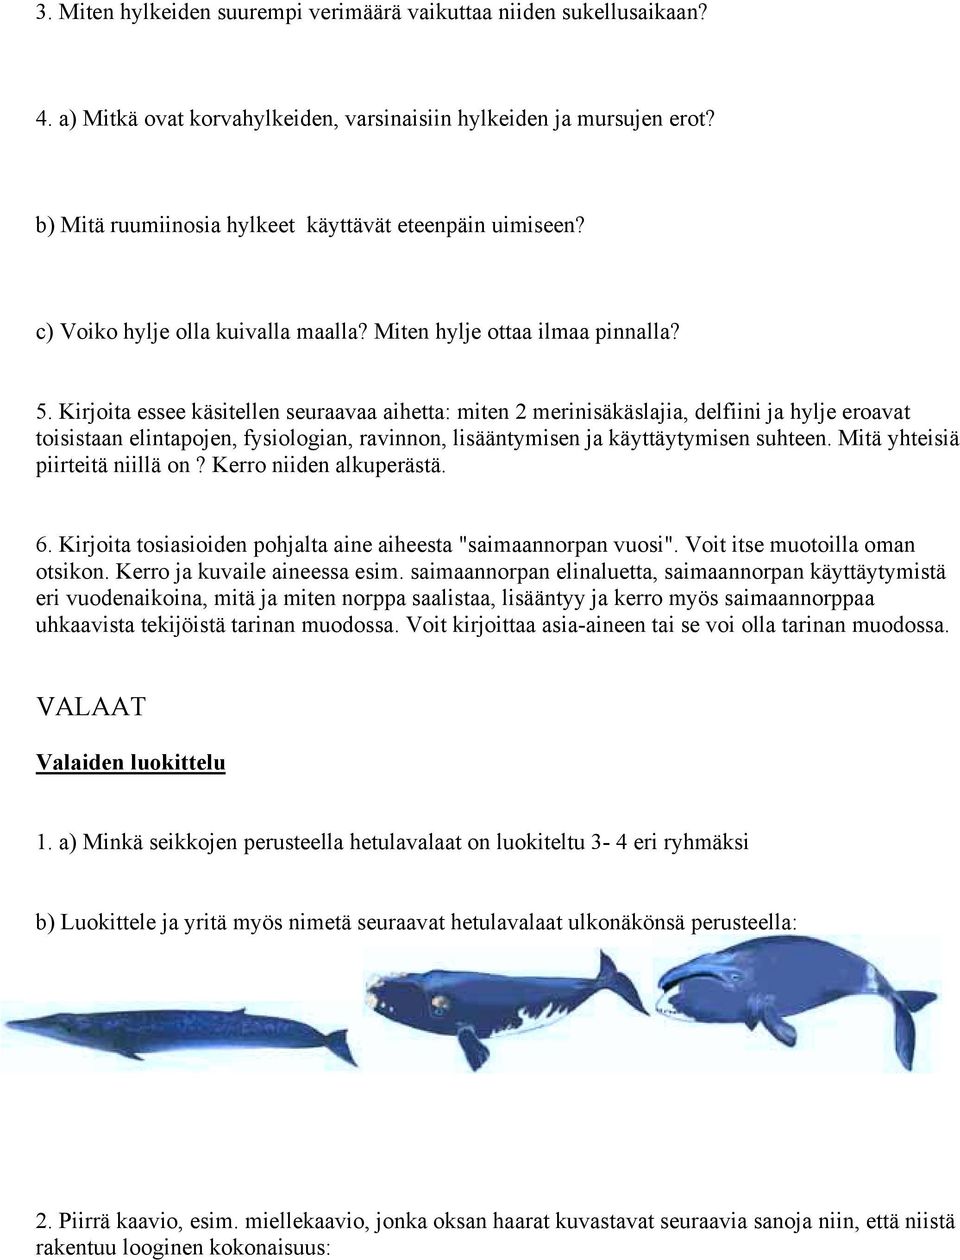 Kirjoita essee käsitellen seuraavaa aihetta: miten 2 merinisäkäslajia, delfiini ja hylje eroavat toisistaan elintapojen, fysiologian, ravinnon, lisääntymisen ja käyttäytymisen suhteen.